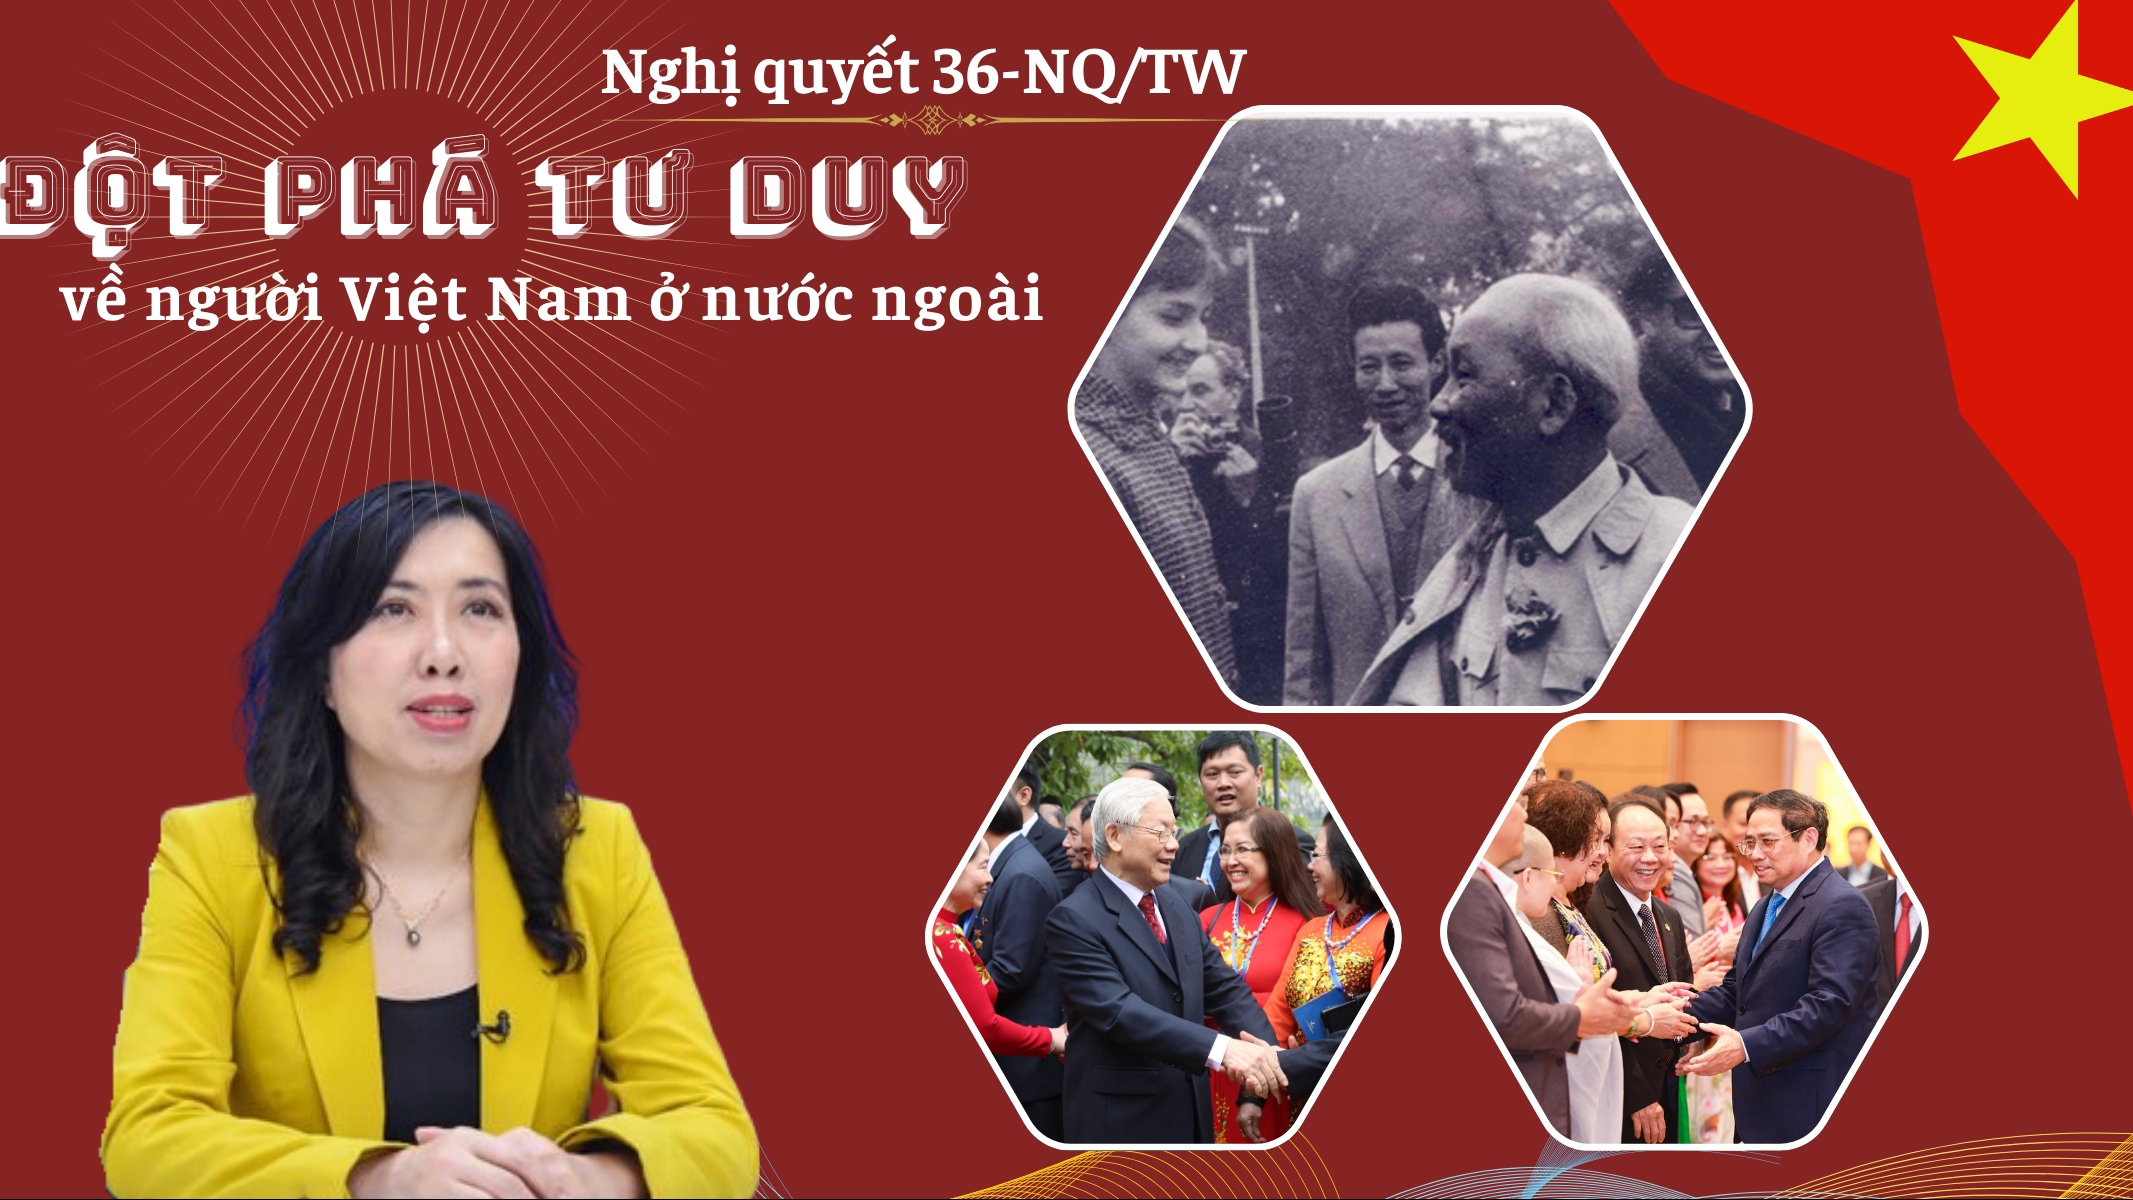 Nghị quyết số 36-NQ/TW: Đột phá tư duy về người Việt Nam ở nước ngoài